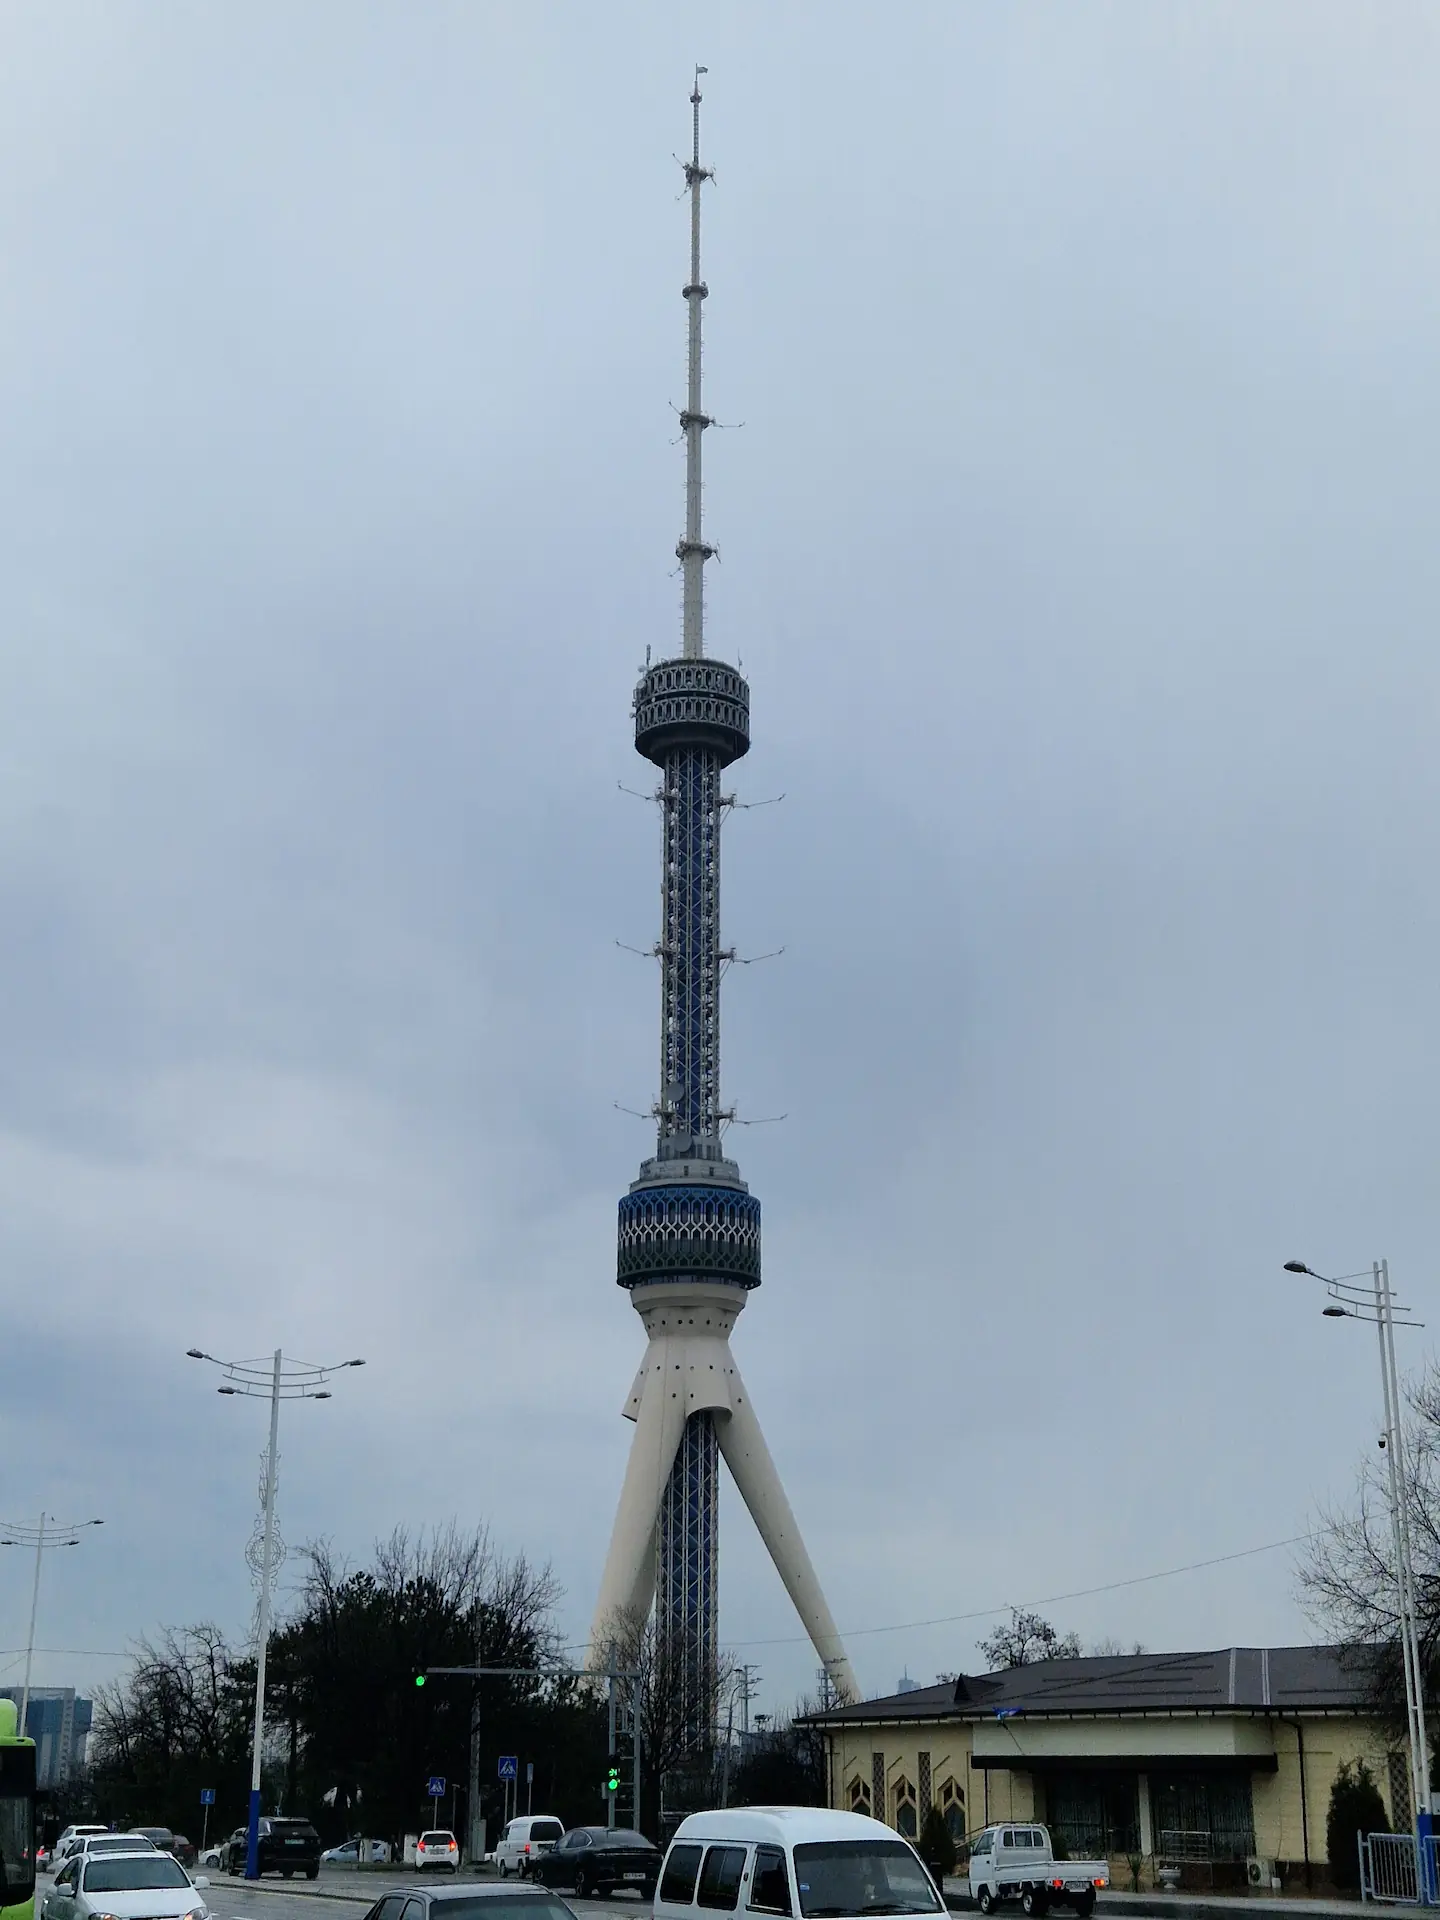 La grande tour de la radiotélévision, avec une base à trois pieds et une longue flèche